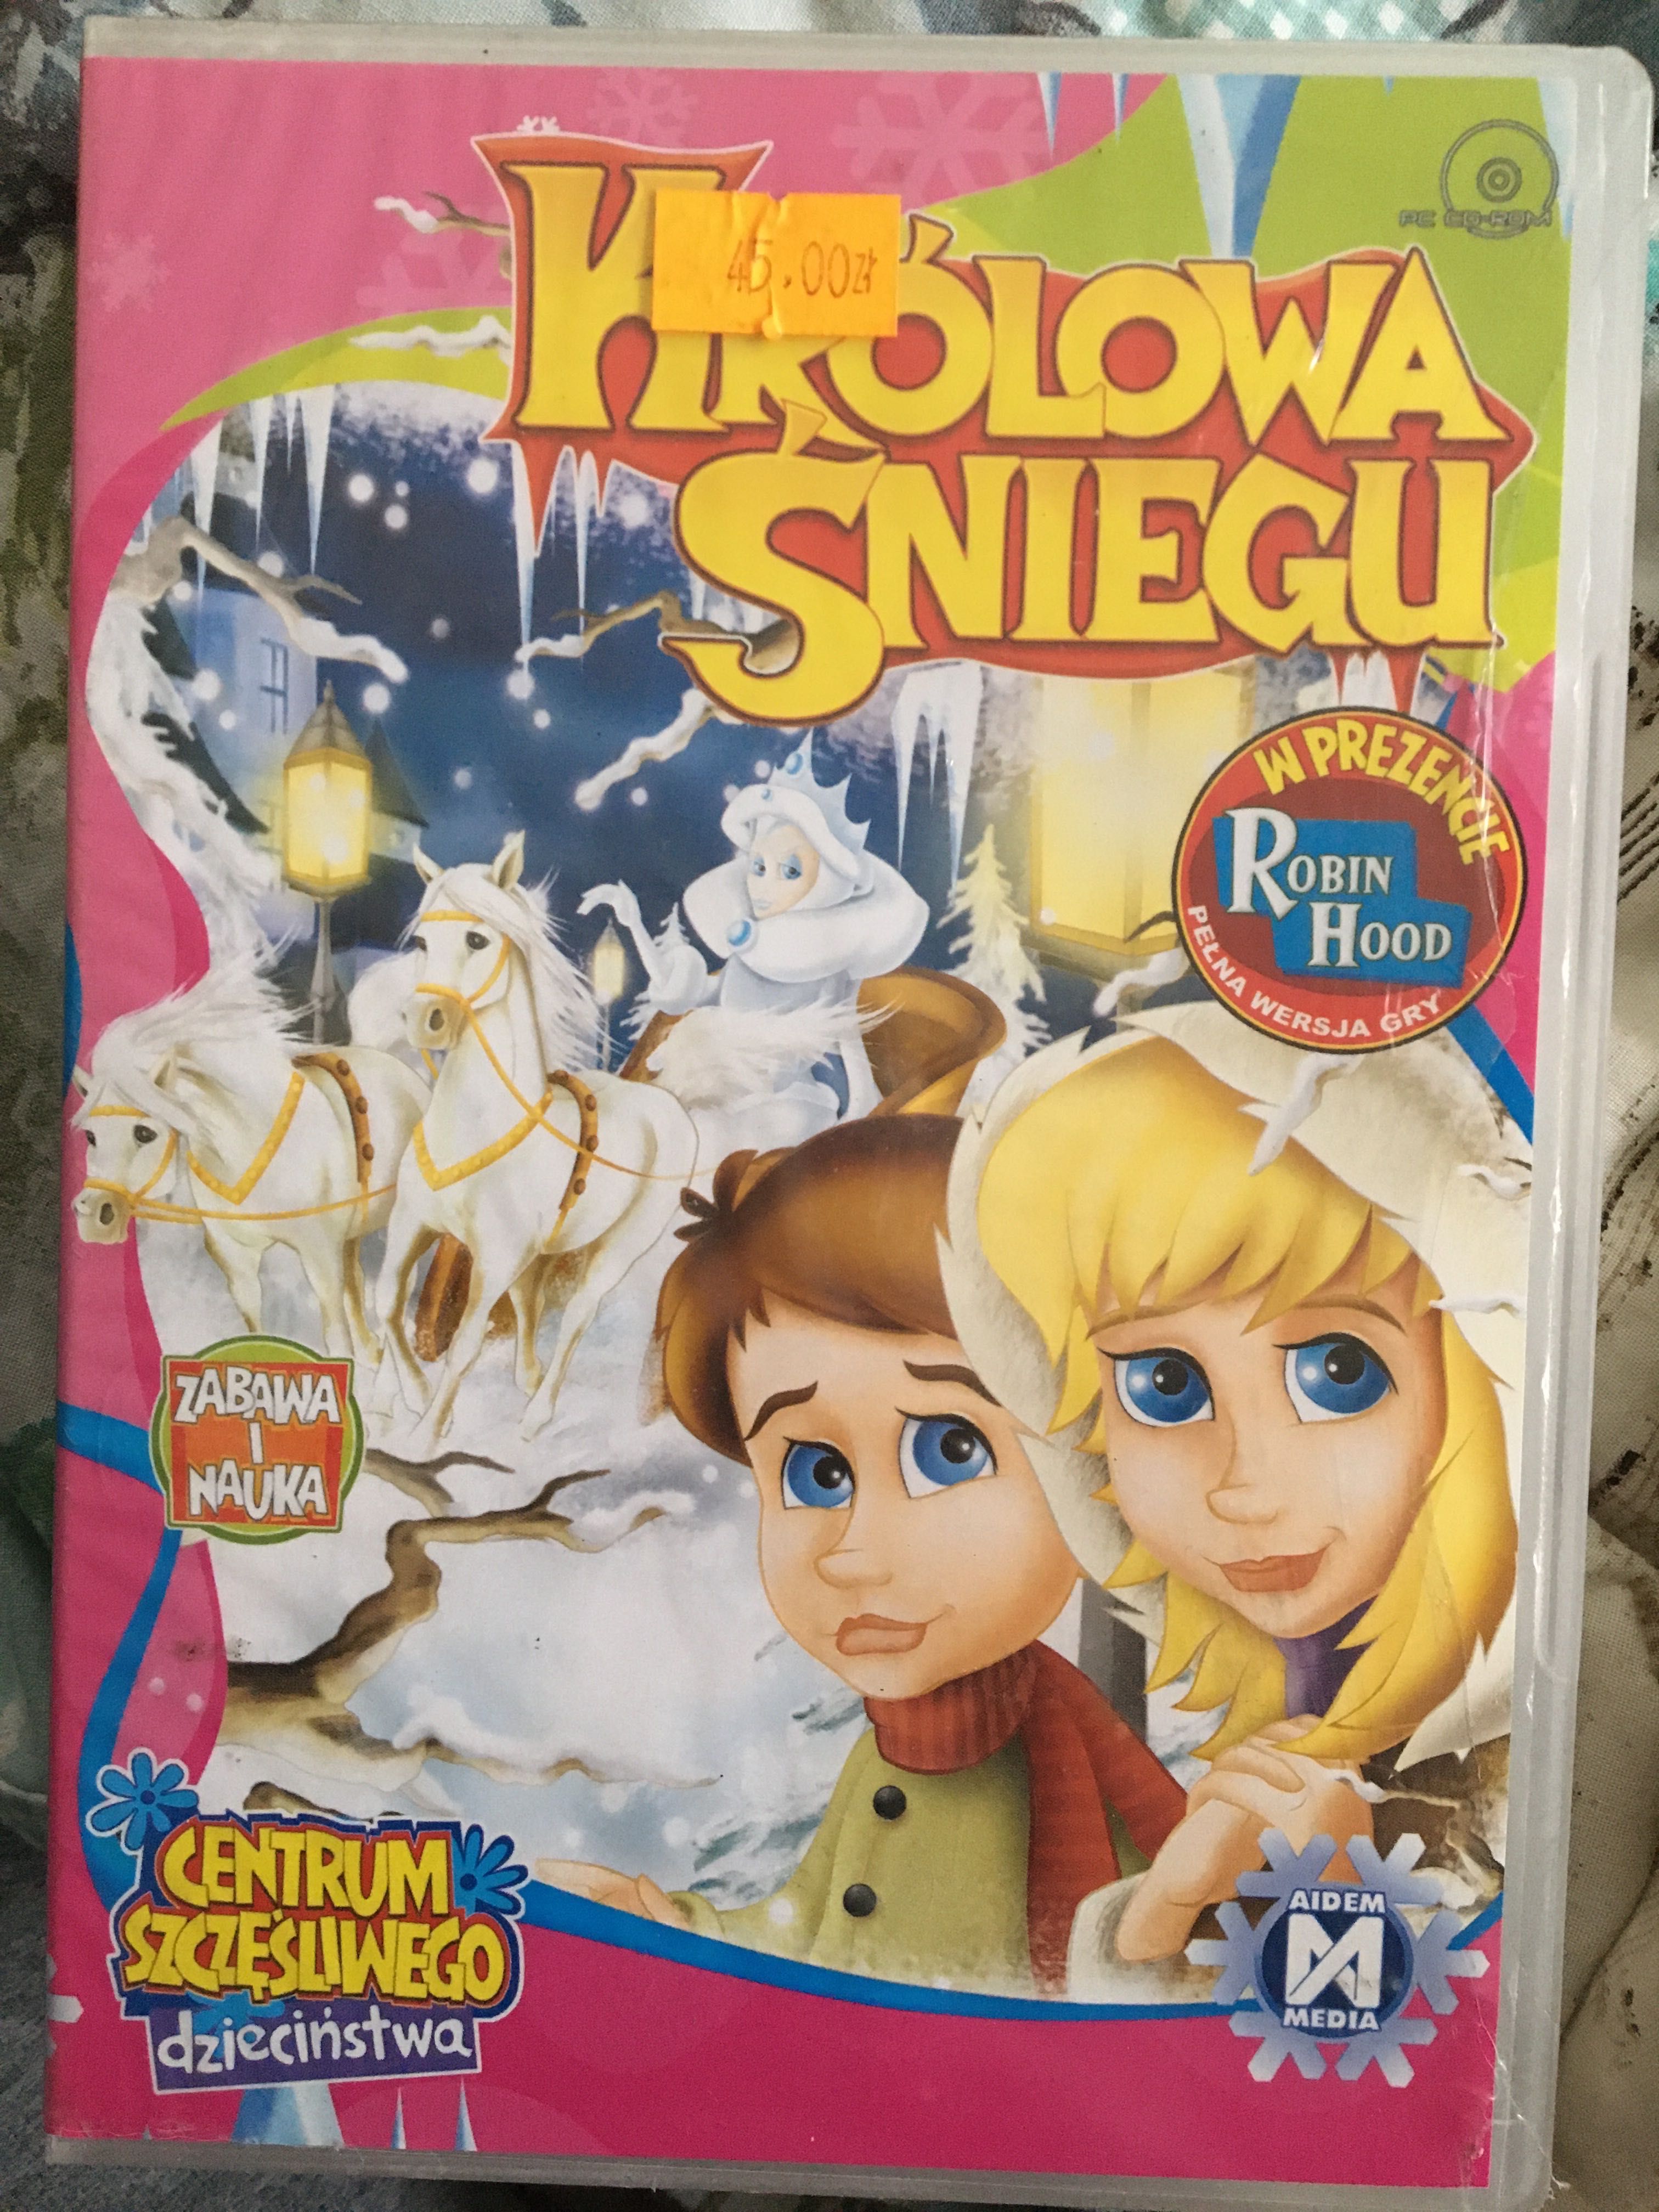 Królowa Śniegu , PC CD ROM, zabawa i nauka,nieużywana